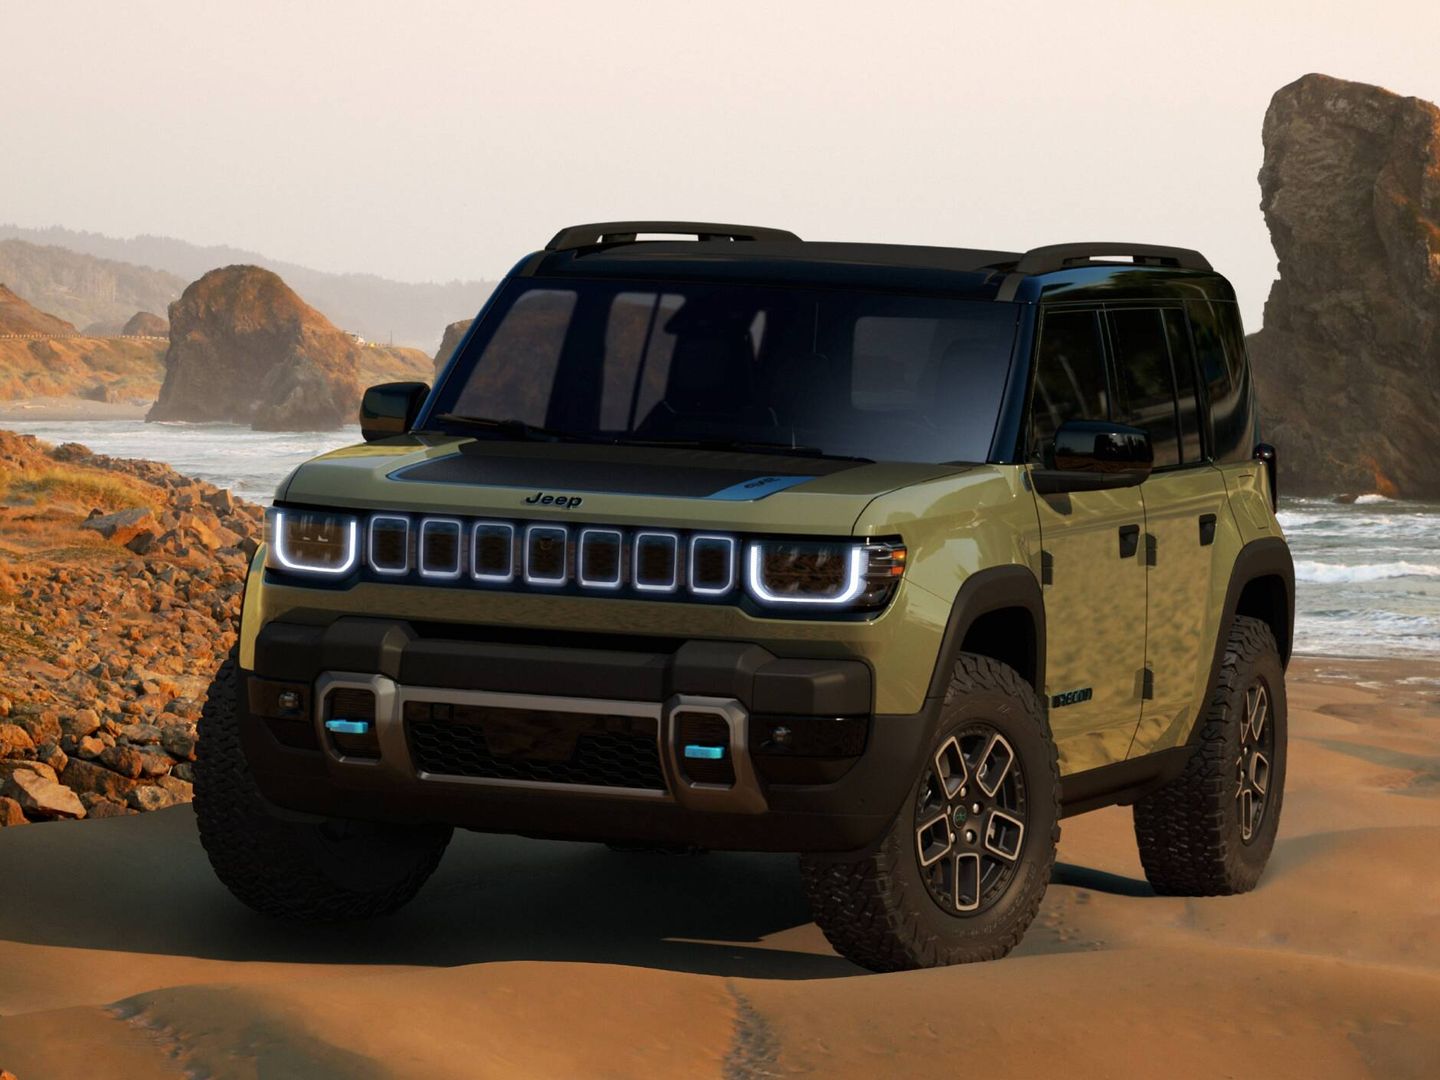 El Jeep Recon Concept se convertirá en un todoterreno eléctrico de serie, pero ya en 2025.